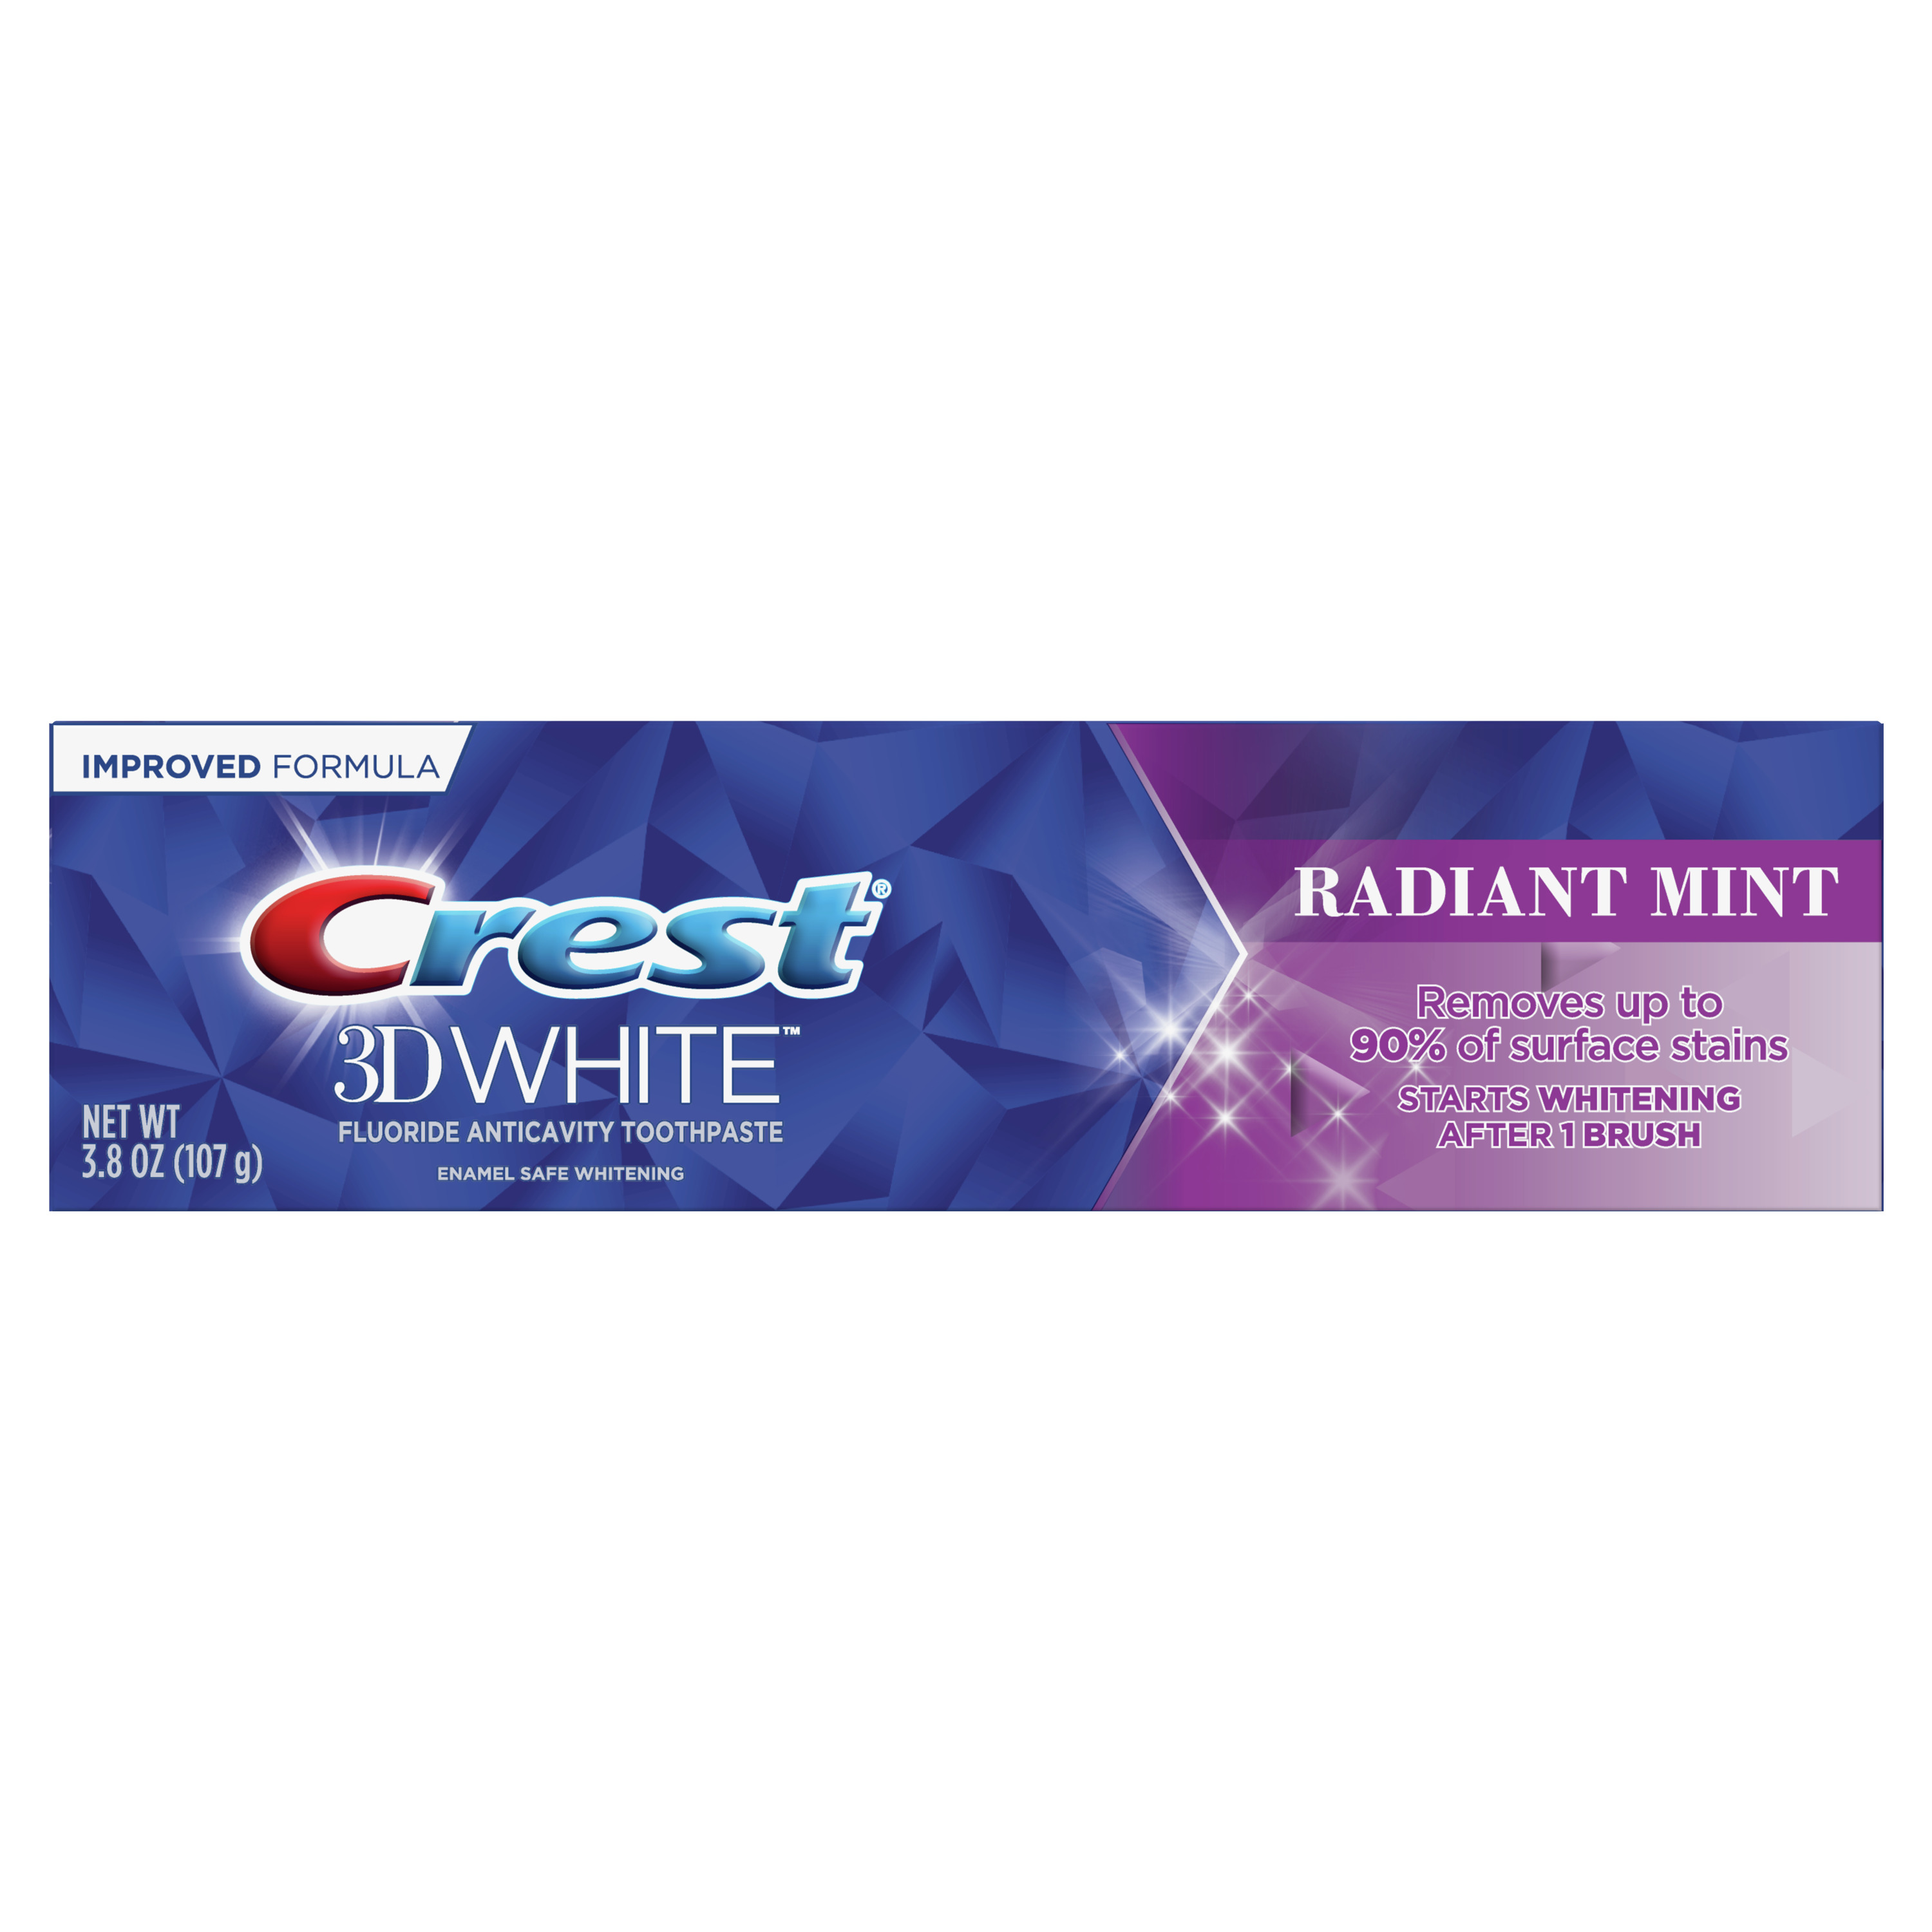 Crest 3D White, Whitening Toothpaste Radiant Mint 107g - làm trắng răng sau 1 lần dùng